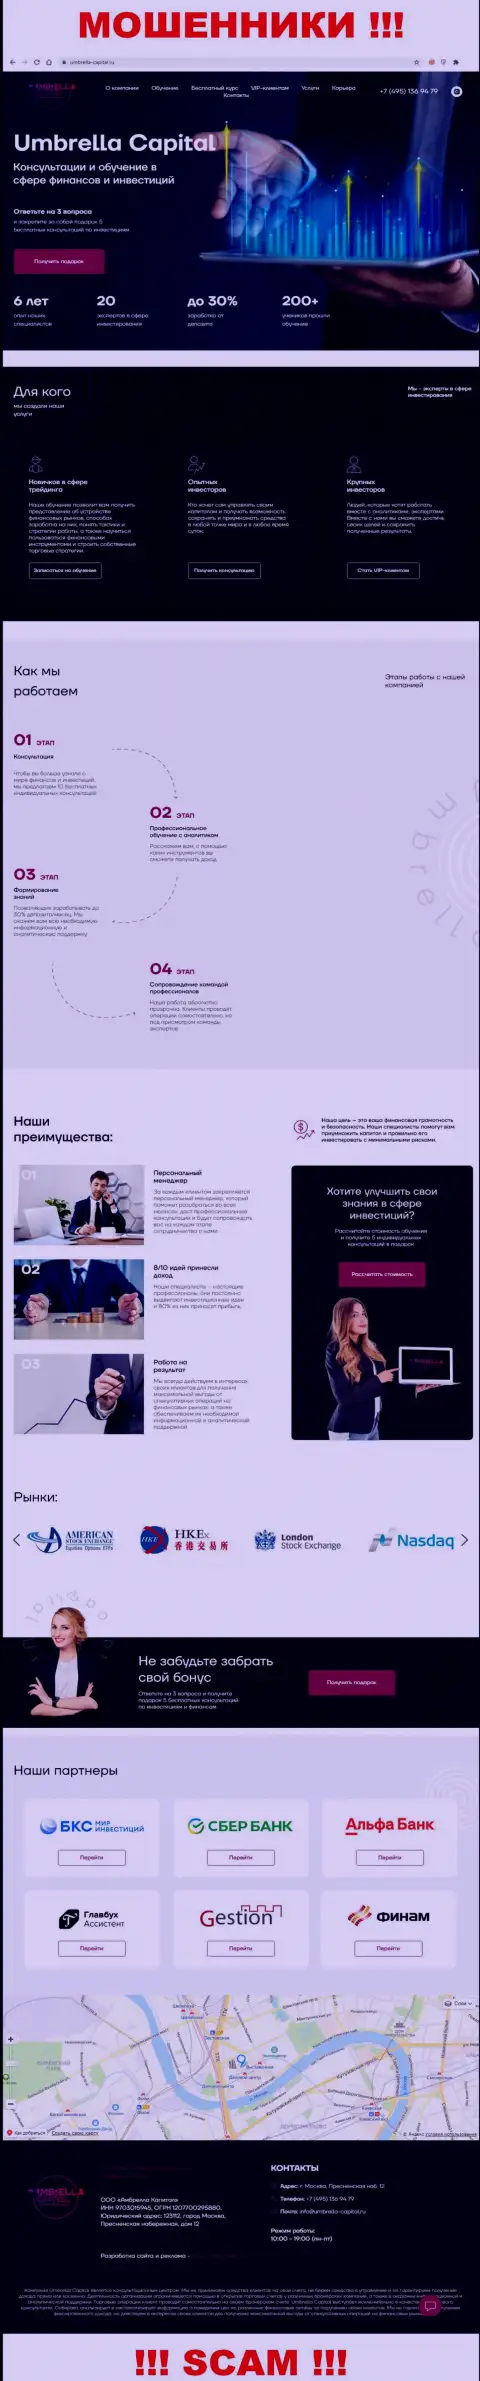 Вид официального веб-портала мошеннической организации Umbrella-Capital Ru